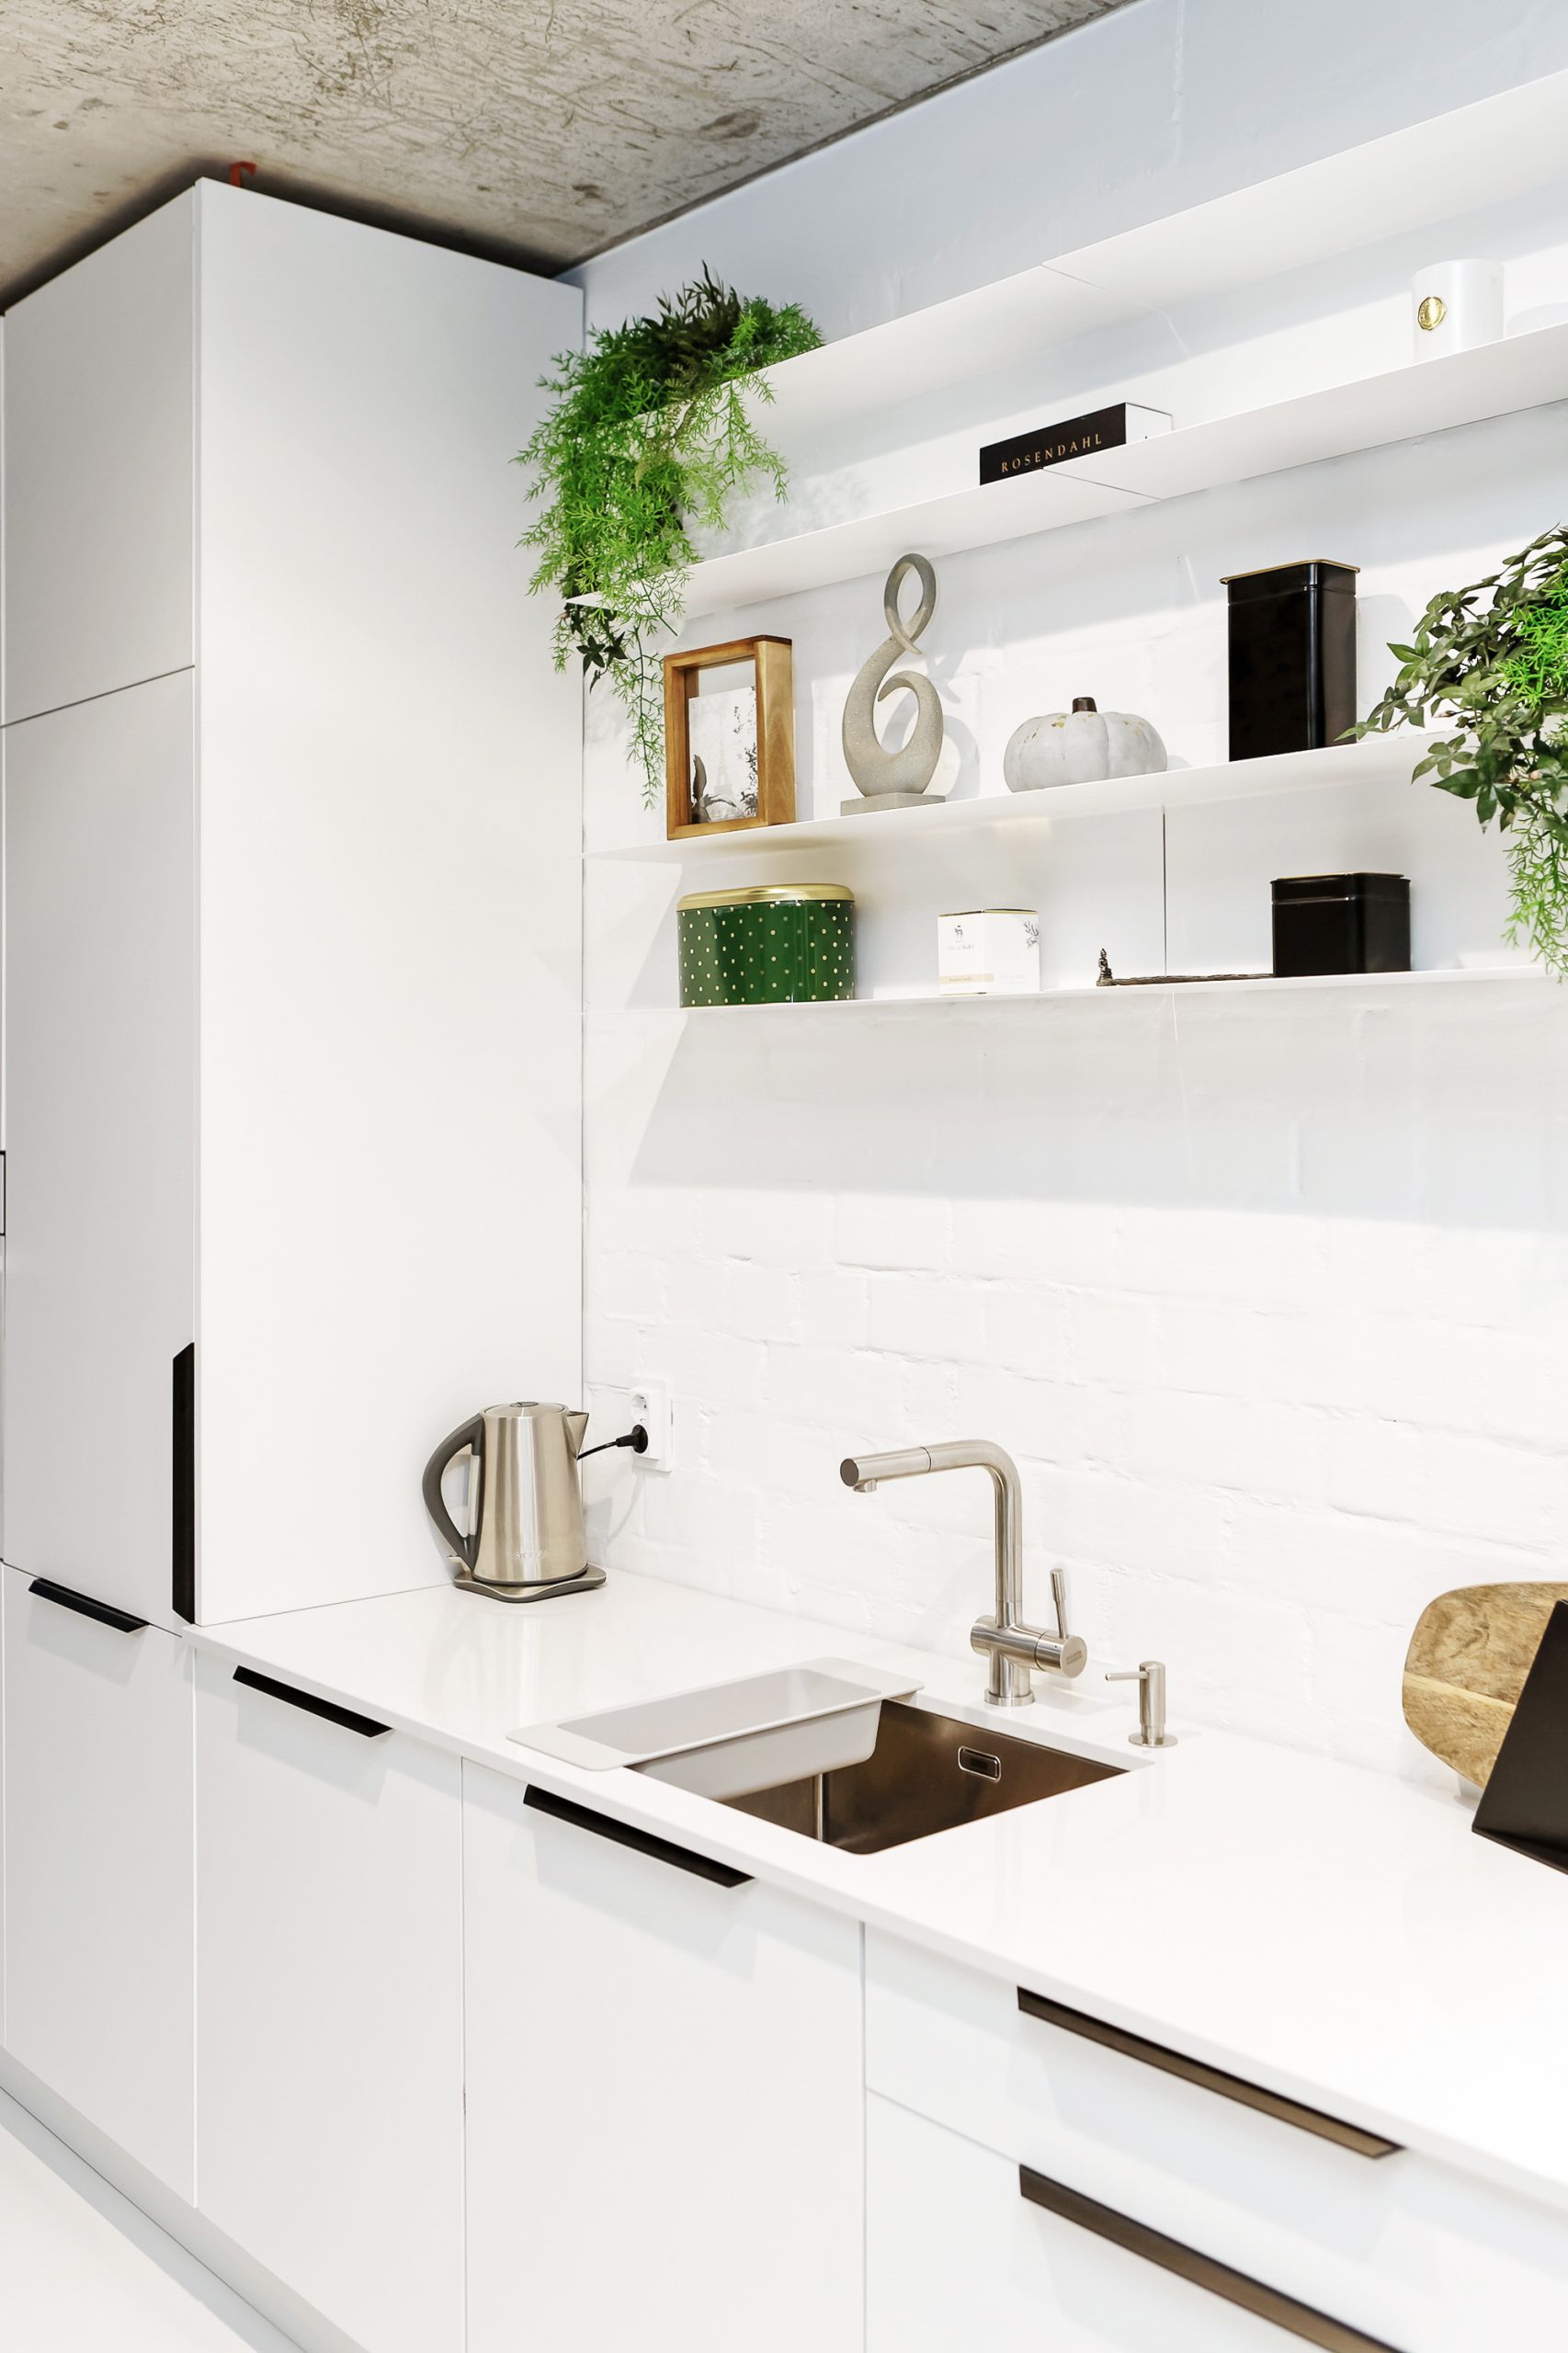 White Kitchen furniture with sink